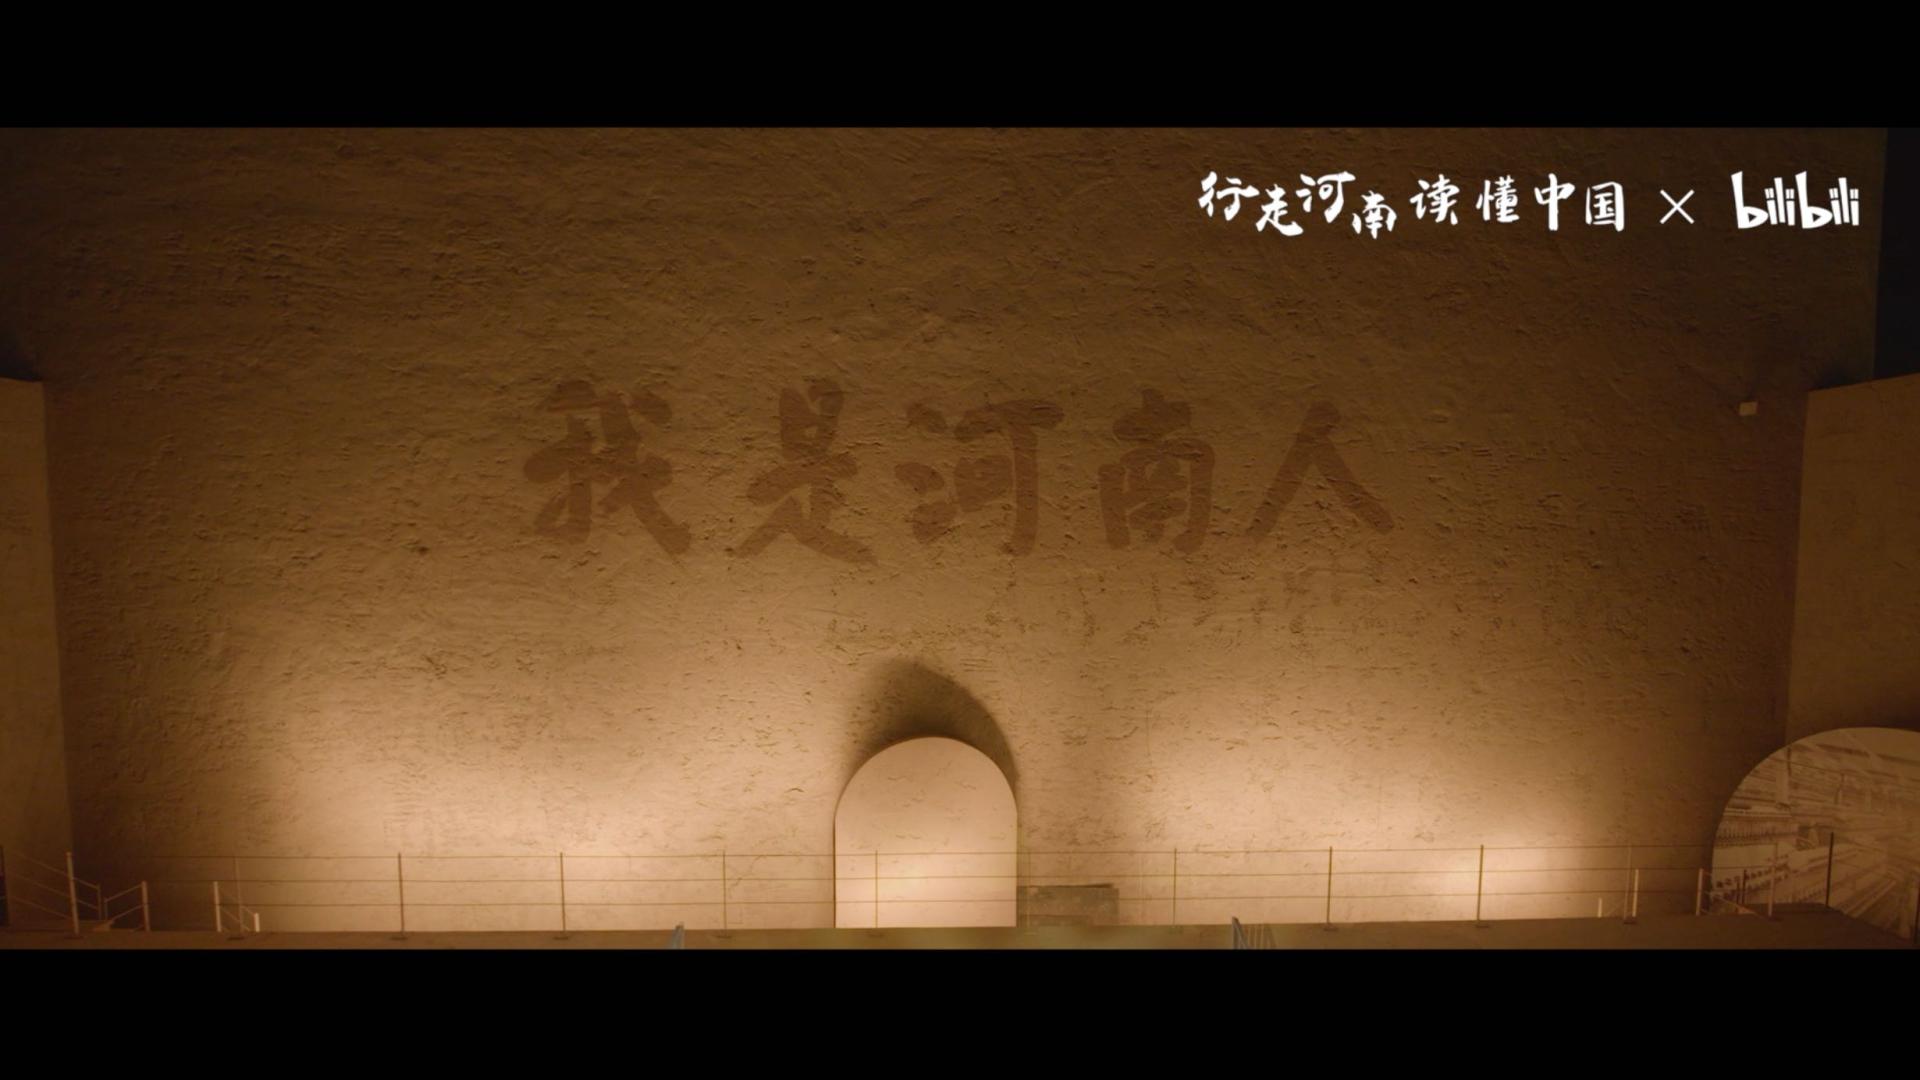 河南省文旅厅 x bilibili冬季游发布会开场视频《行走河南 读懂中国》